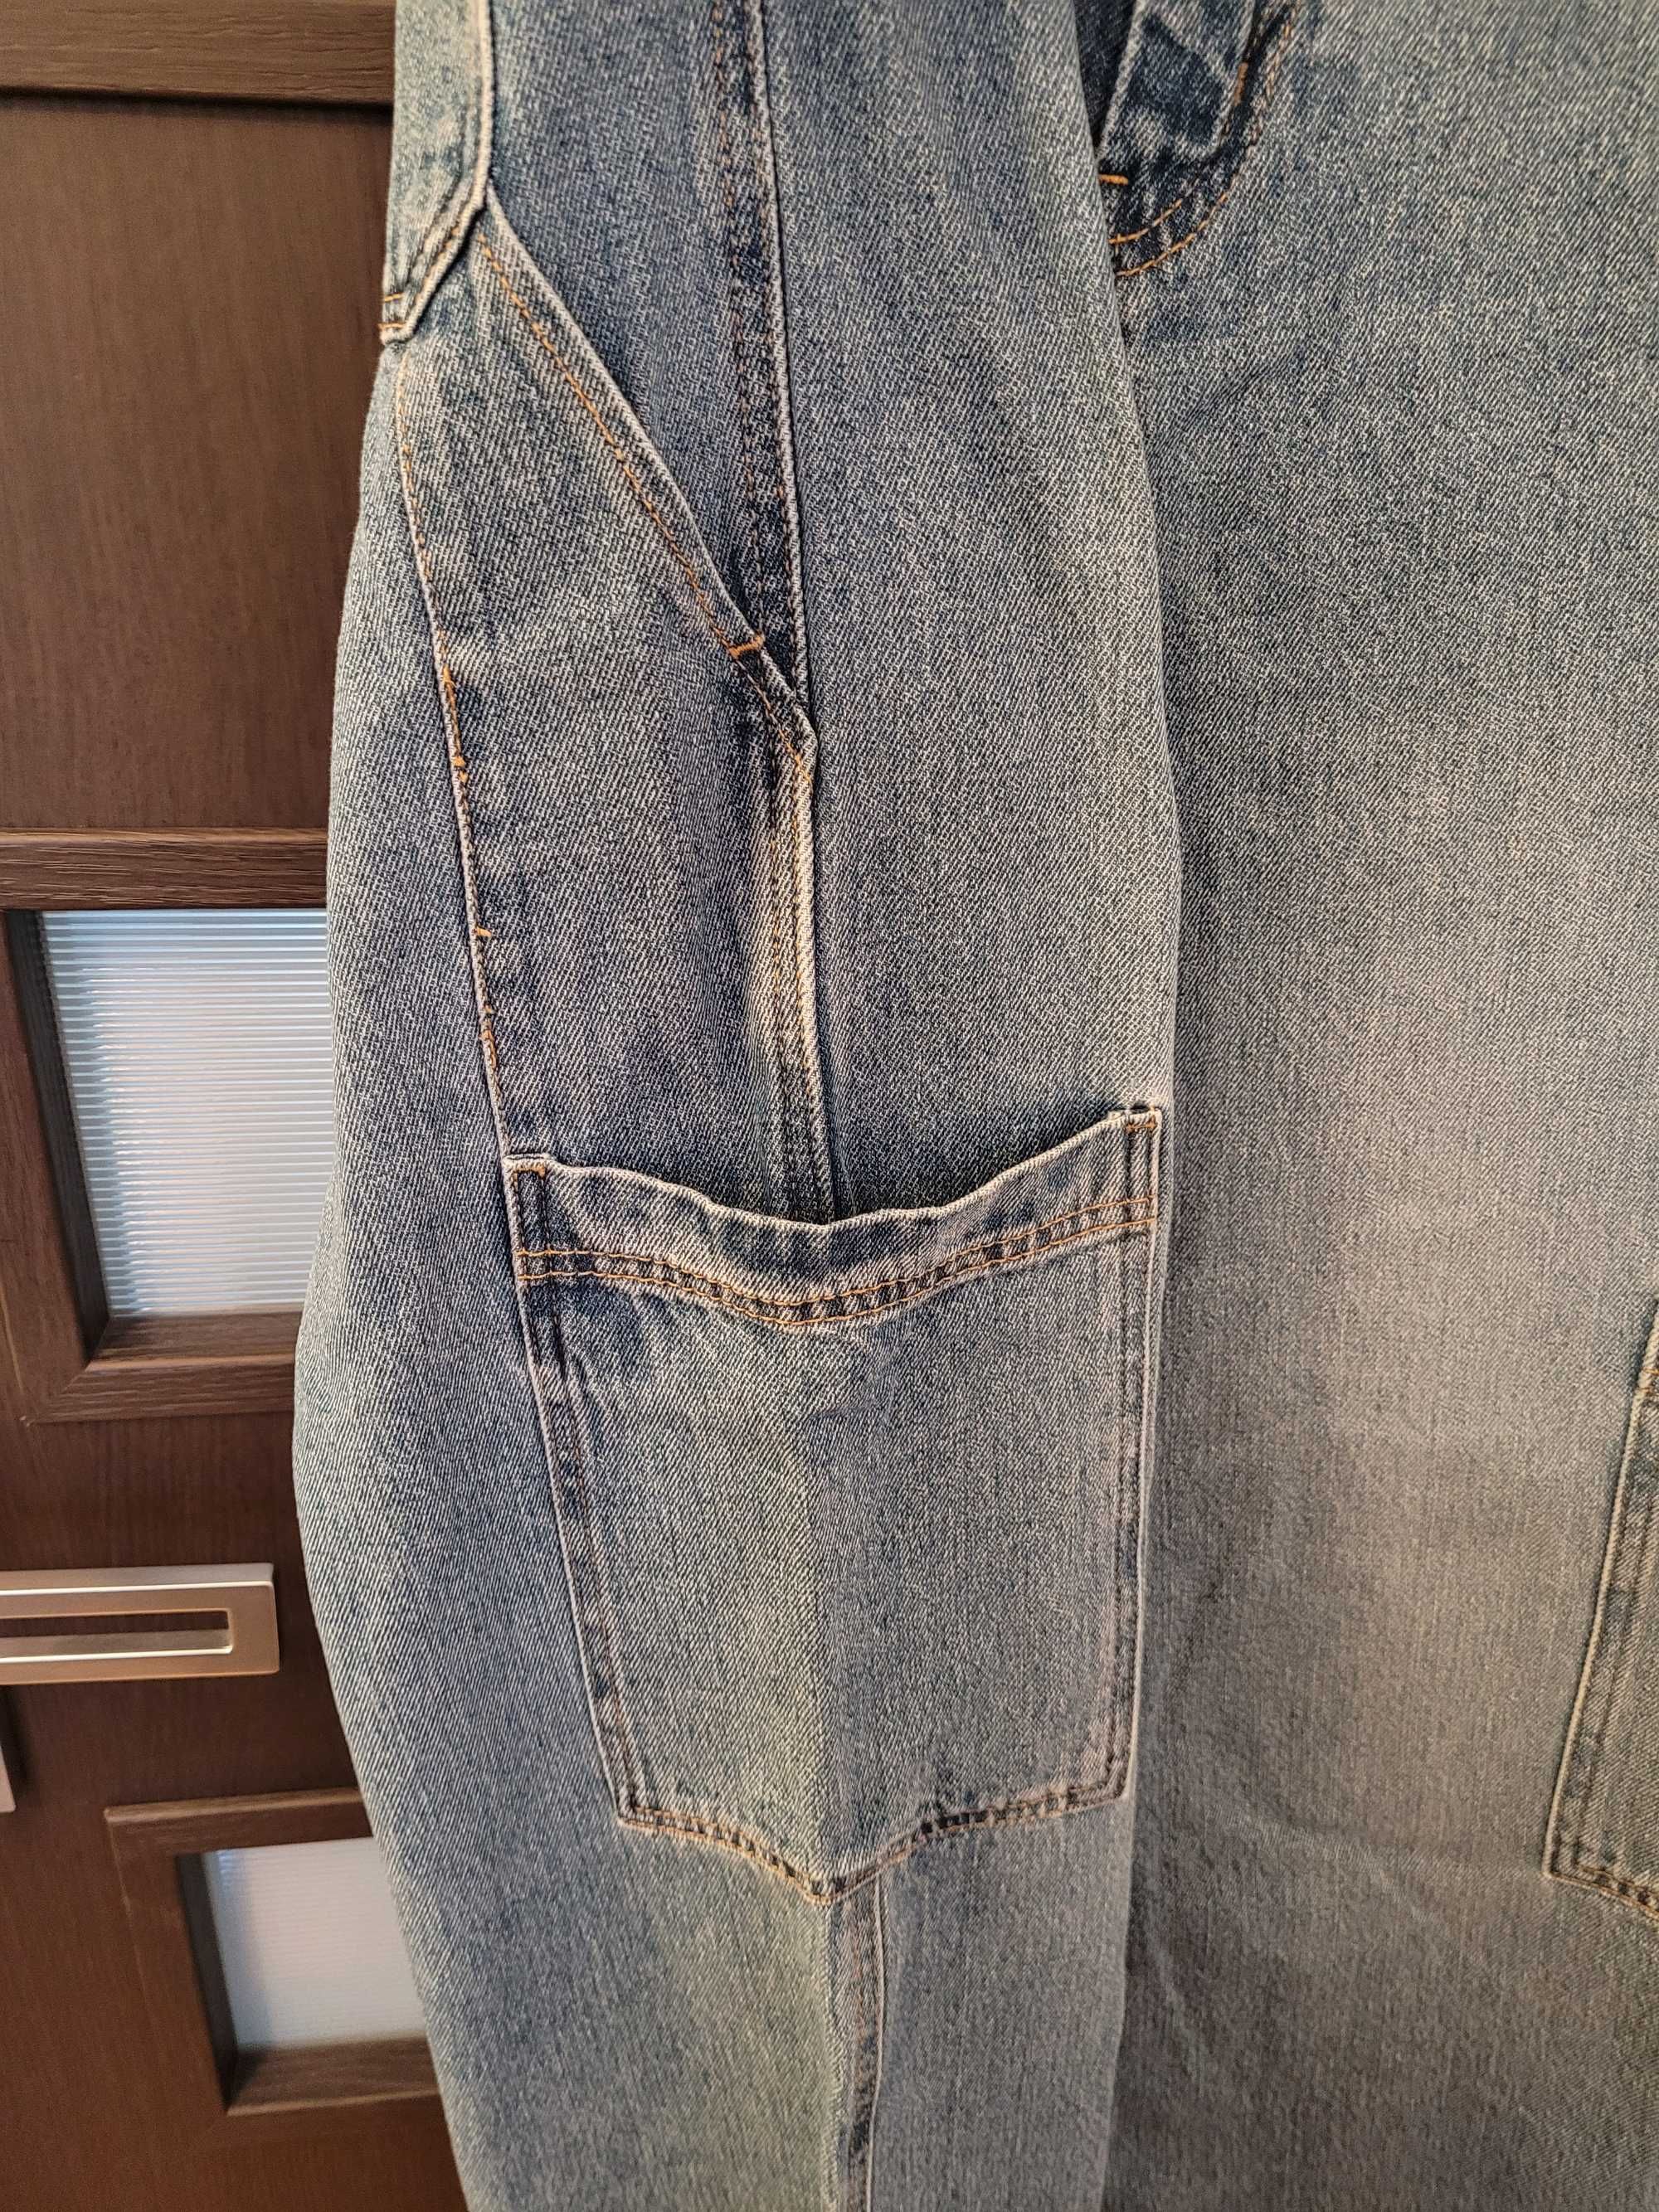 H&M spodnie cargo jeansy r. 38 damskie